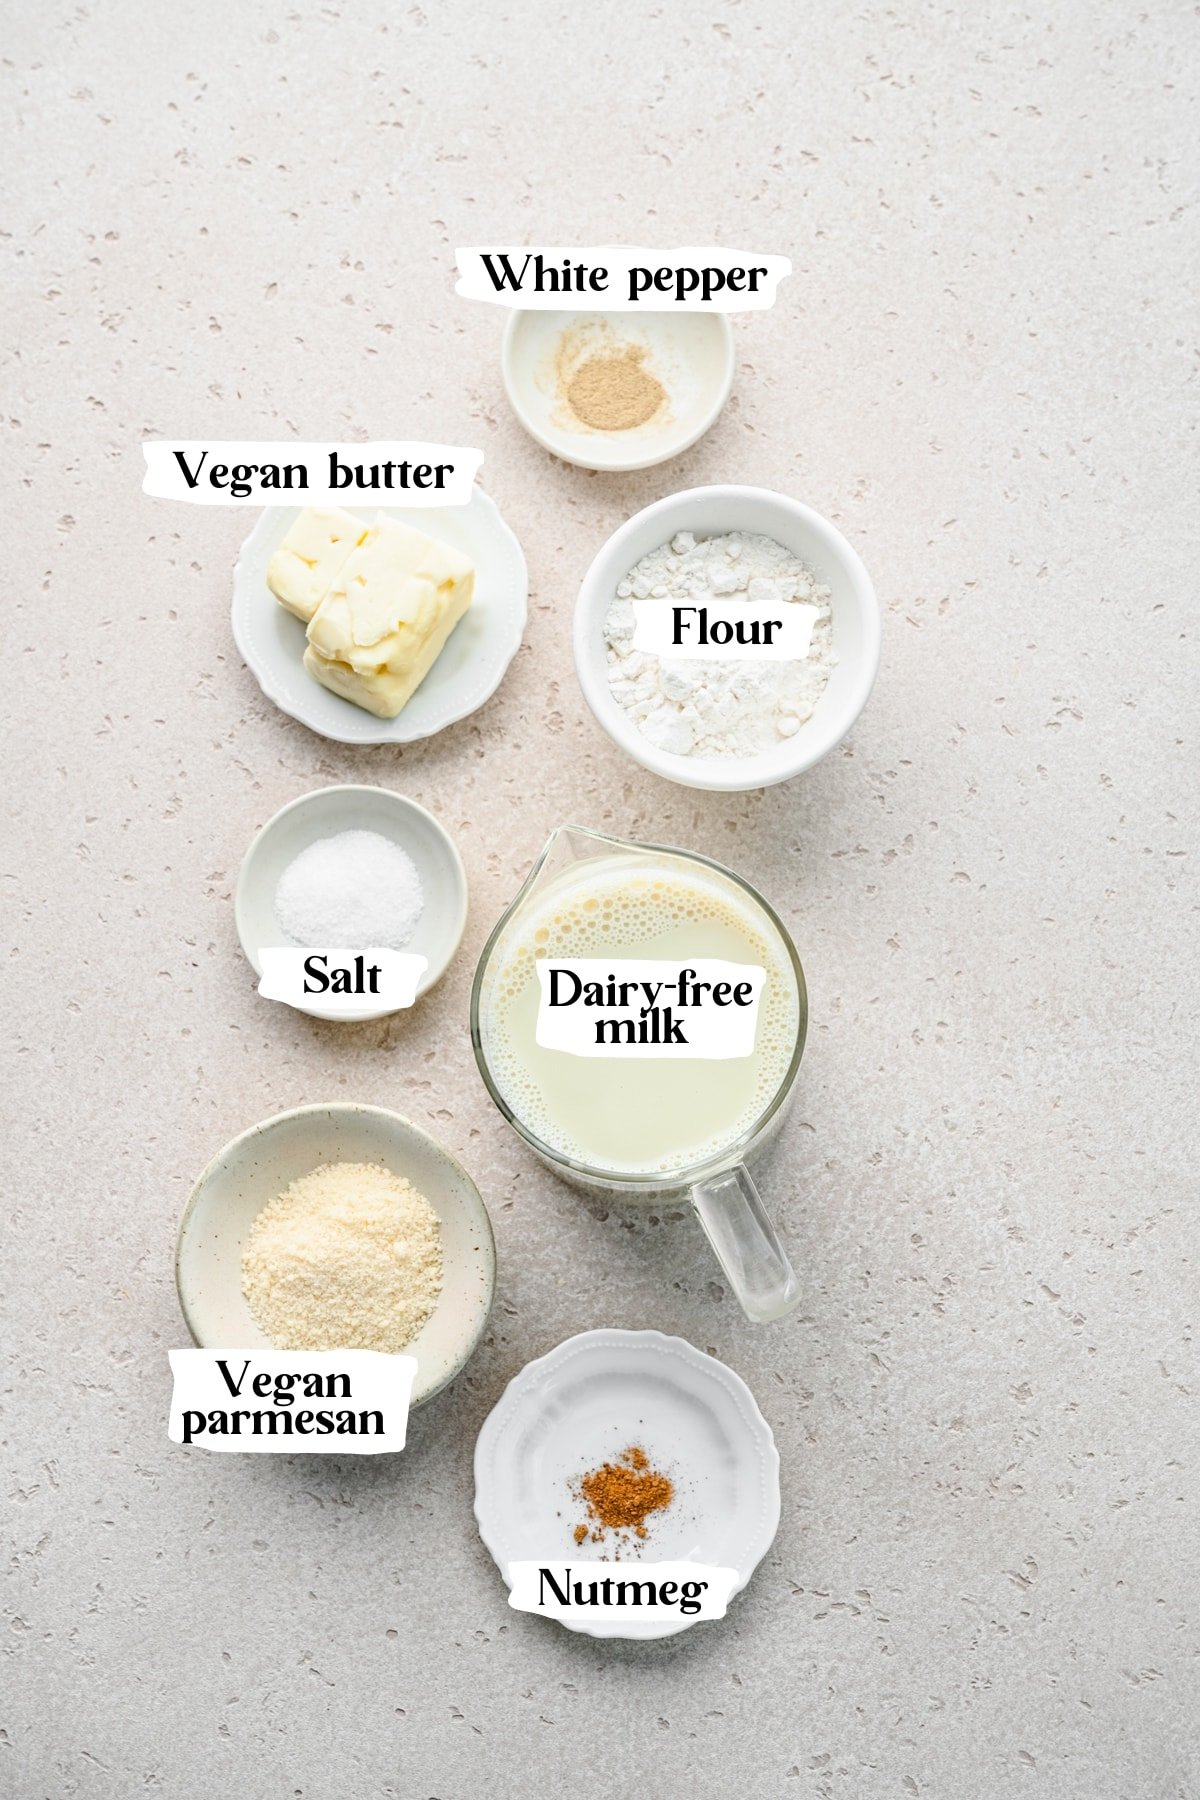 Vegan bechamel ingredients including flour and nutmeg.